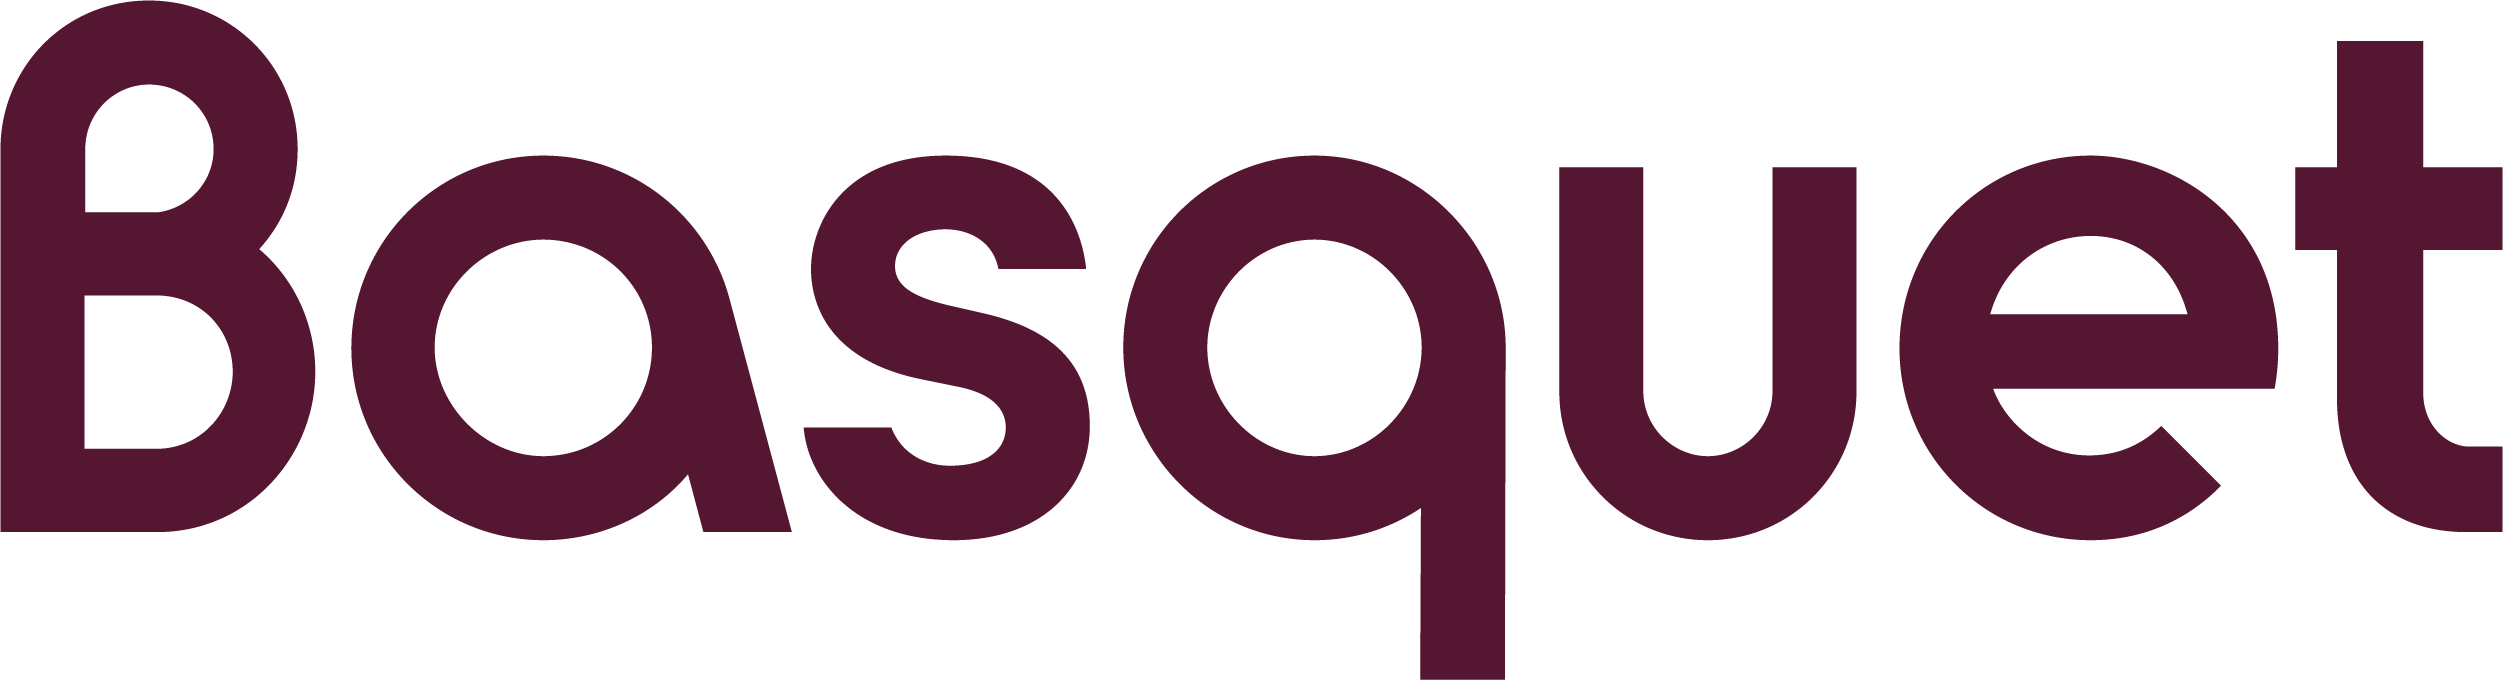 Basquet logo